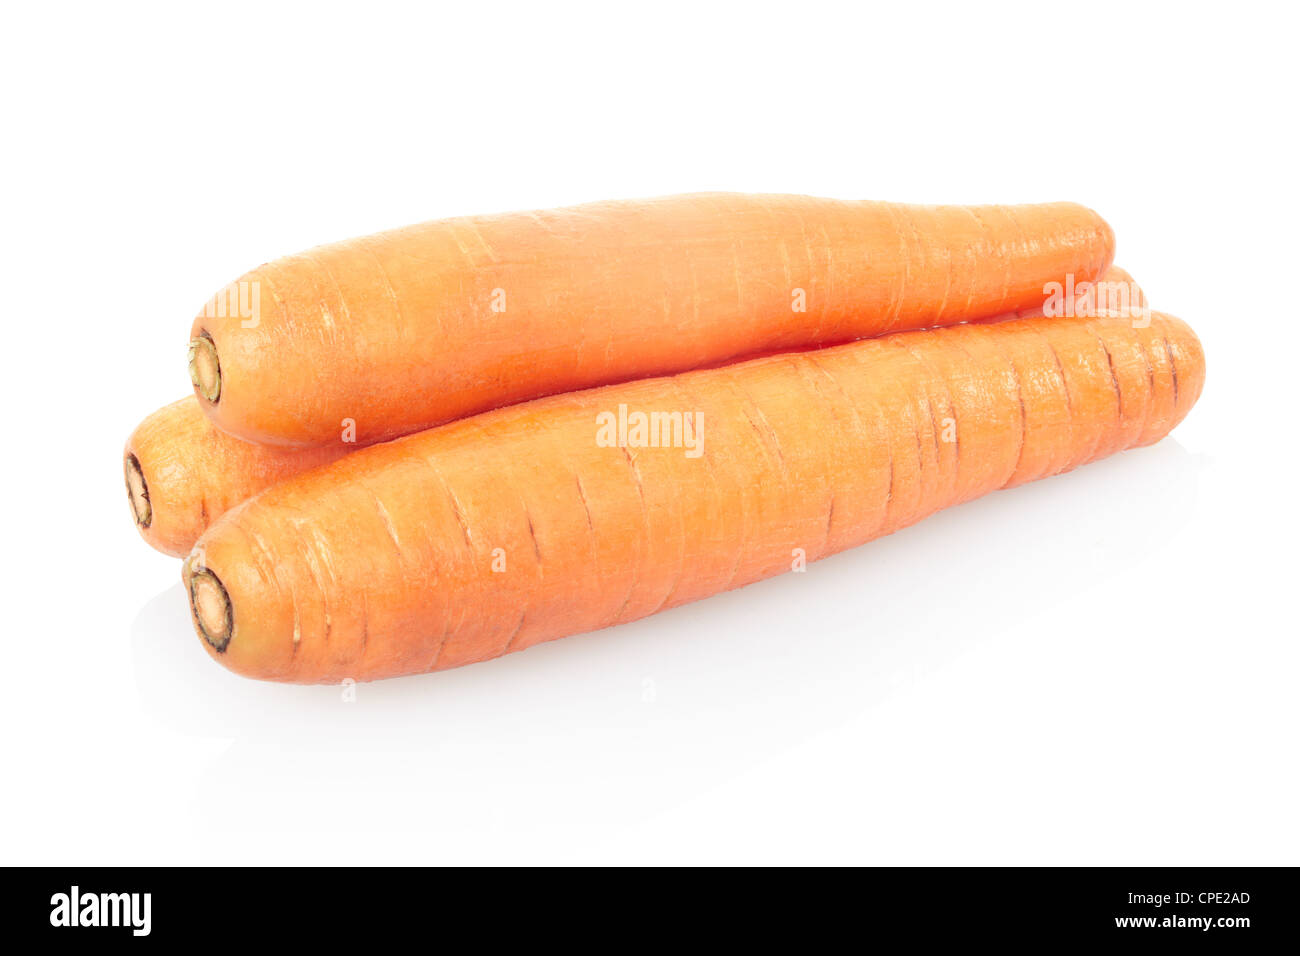 Des carottes sur fond blanc Banque D'Images